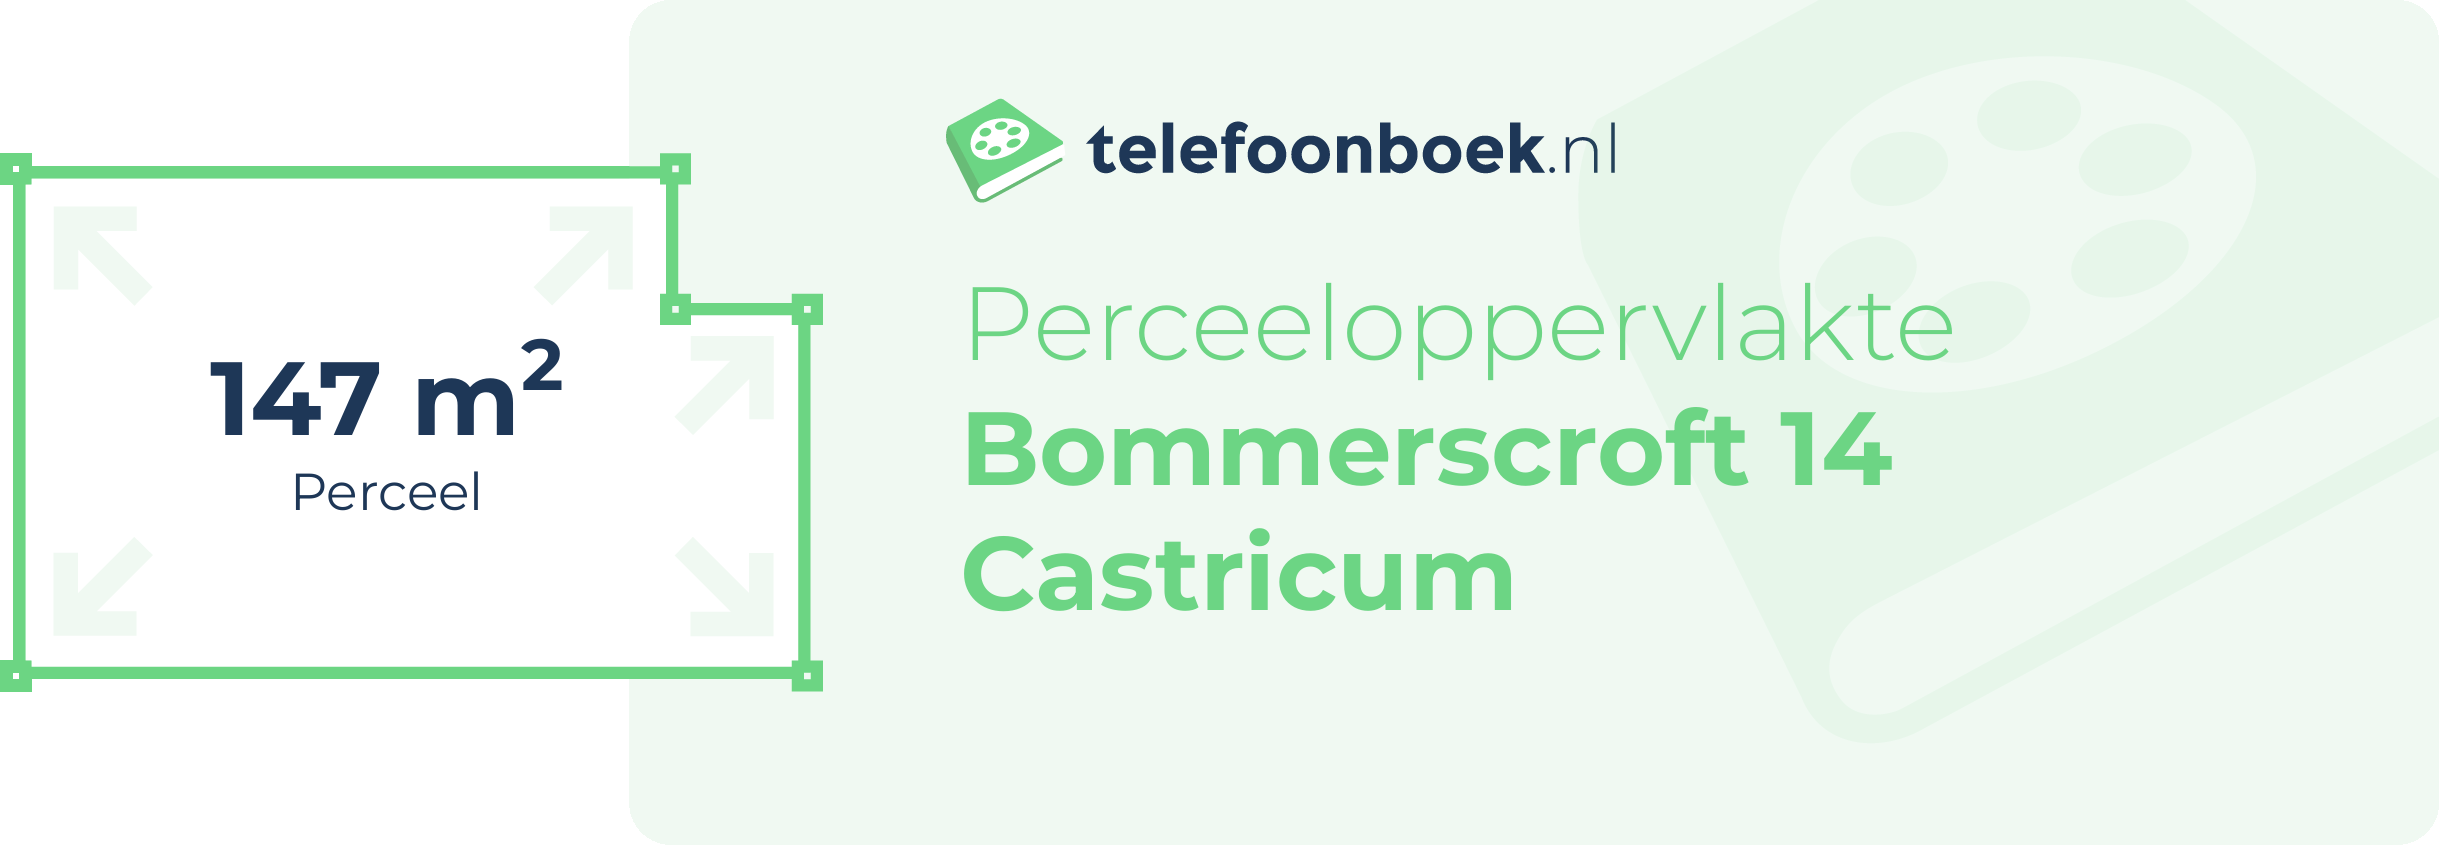 Perceeloppervlakte Bommerscroft 14 Castricum